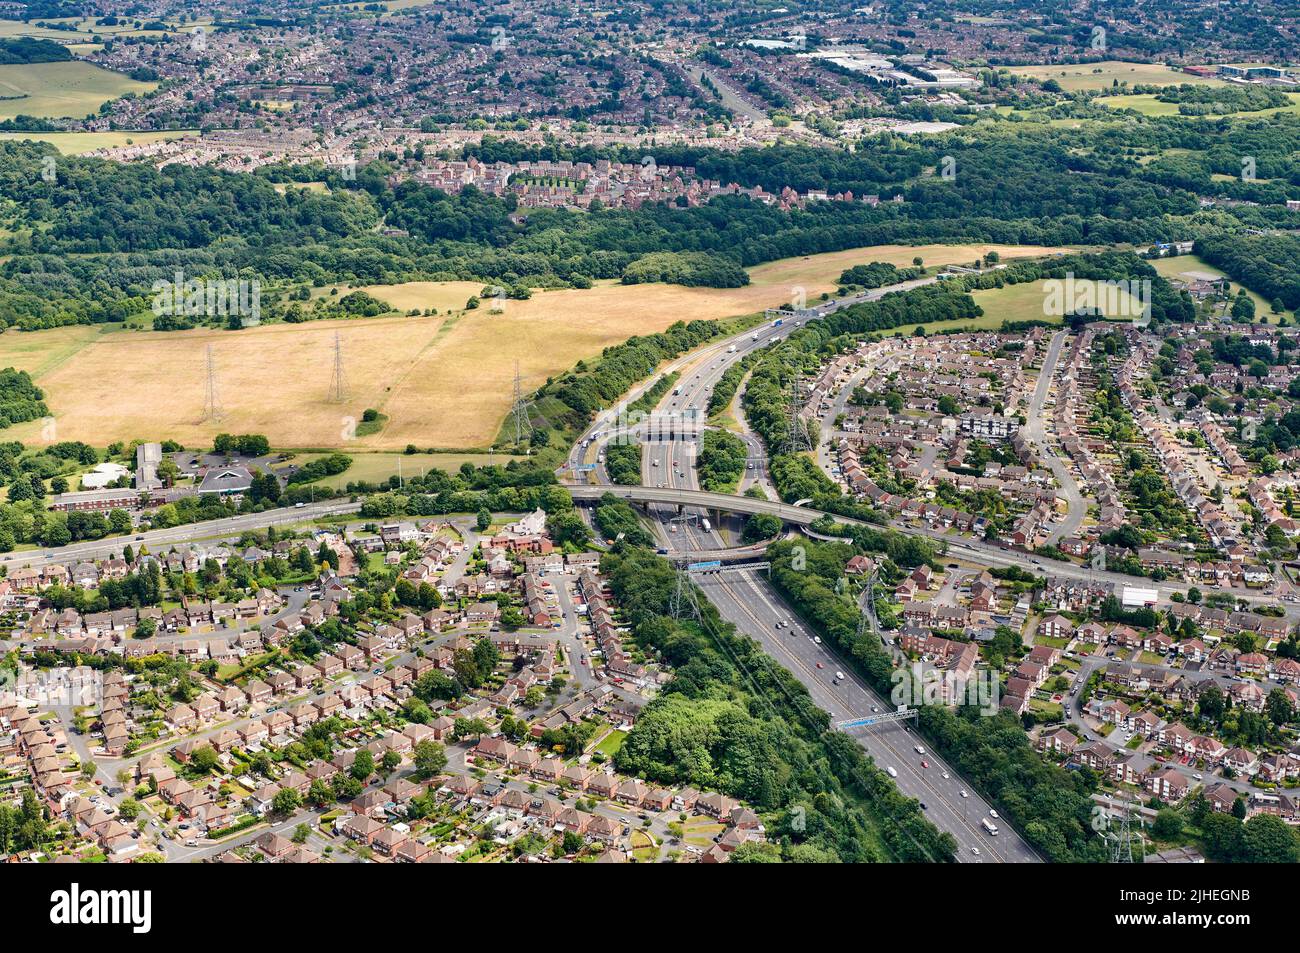 Die berüchtigte M5/M6 Bottleneck Junction, nördlich von Birmingham, aus der Luft, West Midlands, Großbritannien Stockfoto